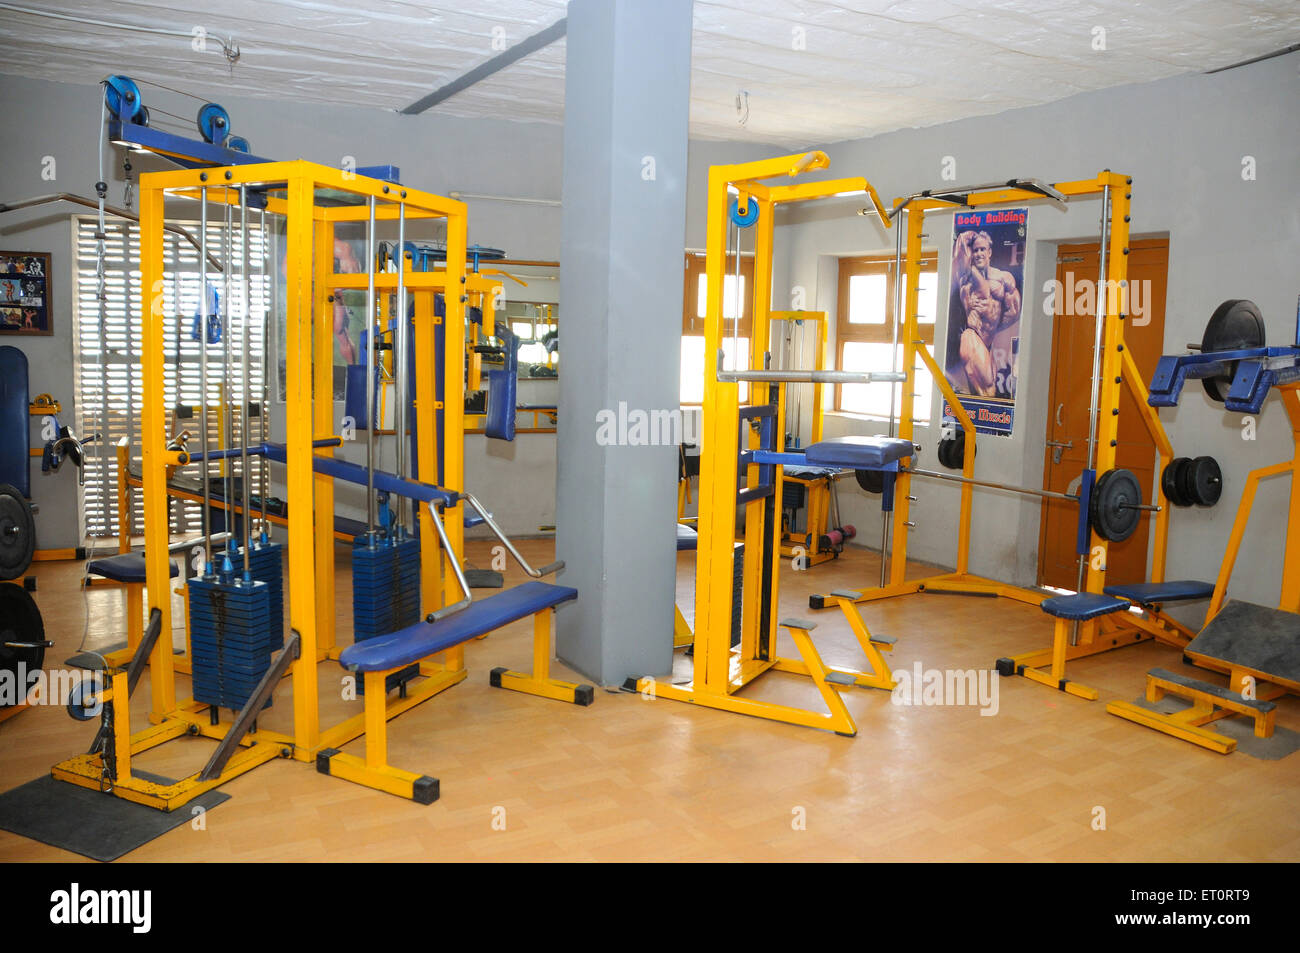 gymnasium equipment Stock Photo